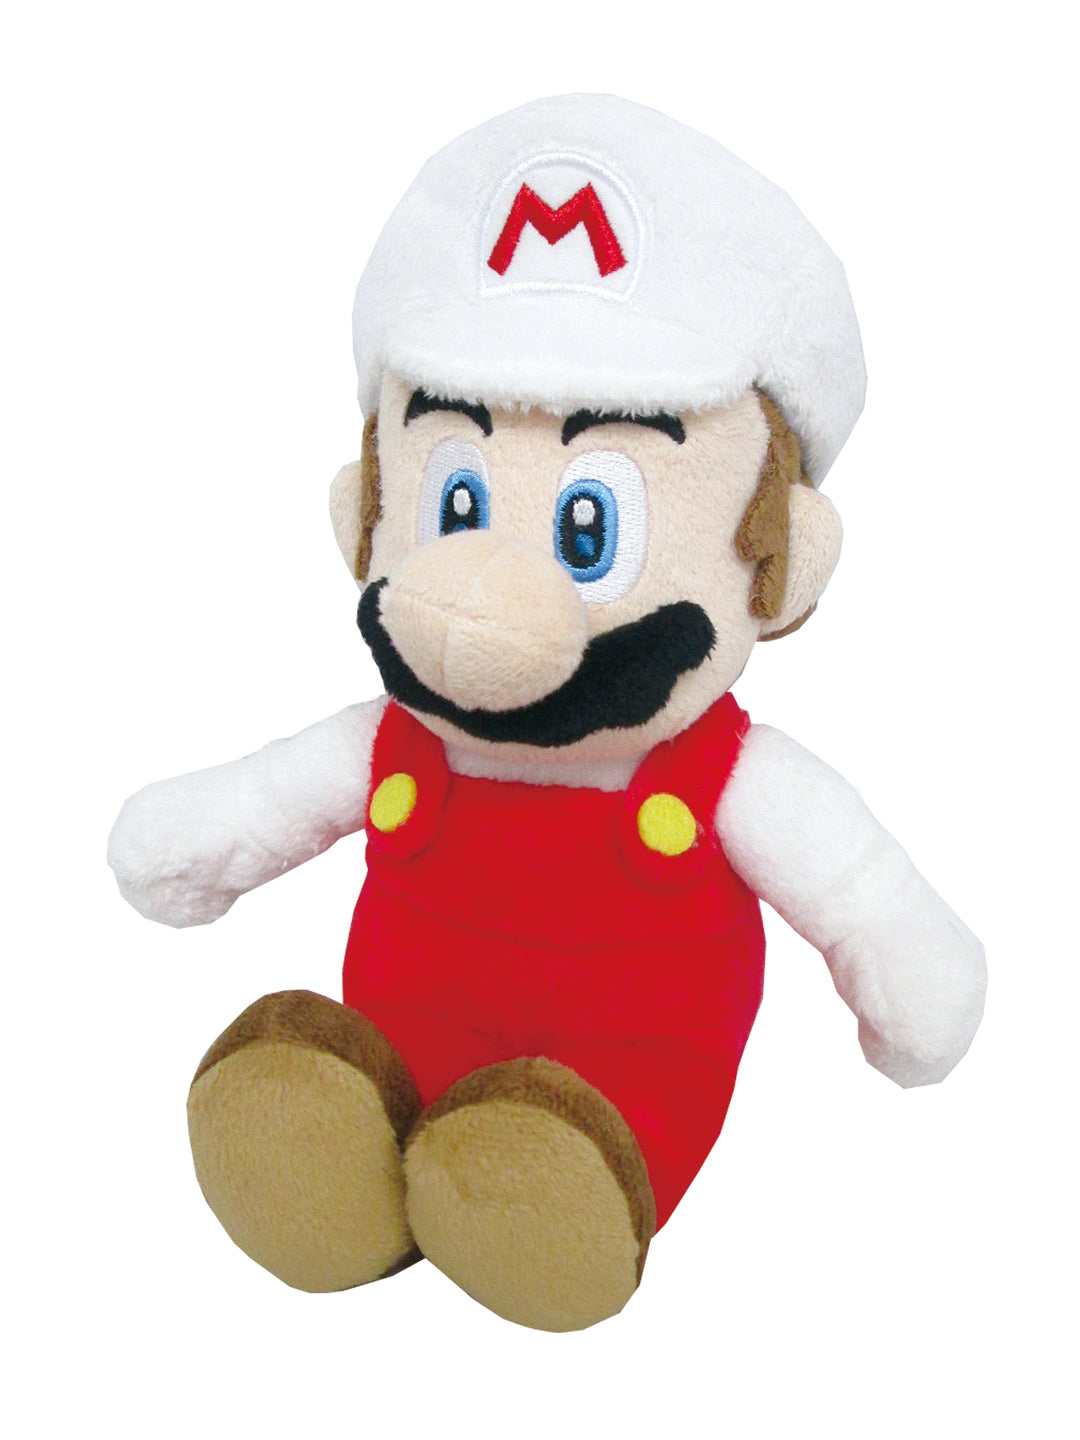 Little Buddy Super Mario Fire Mario 10" Plush